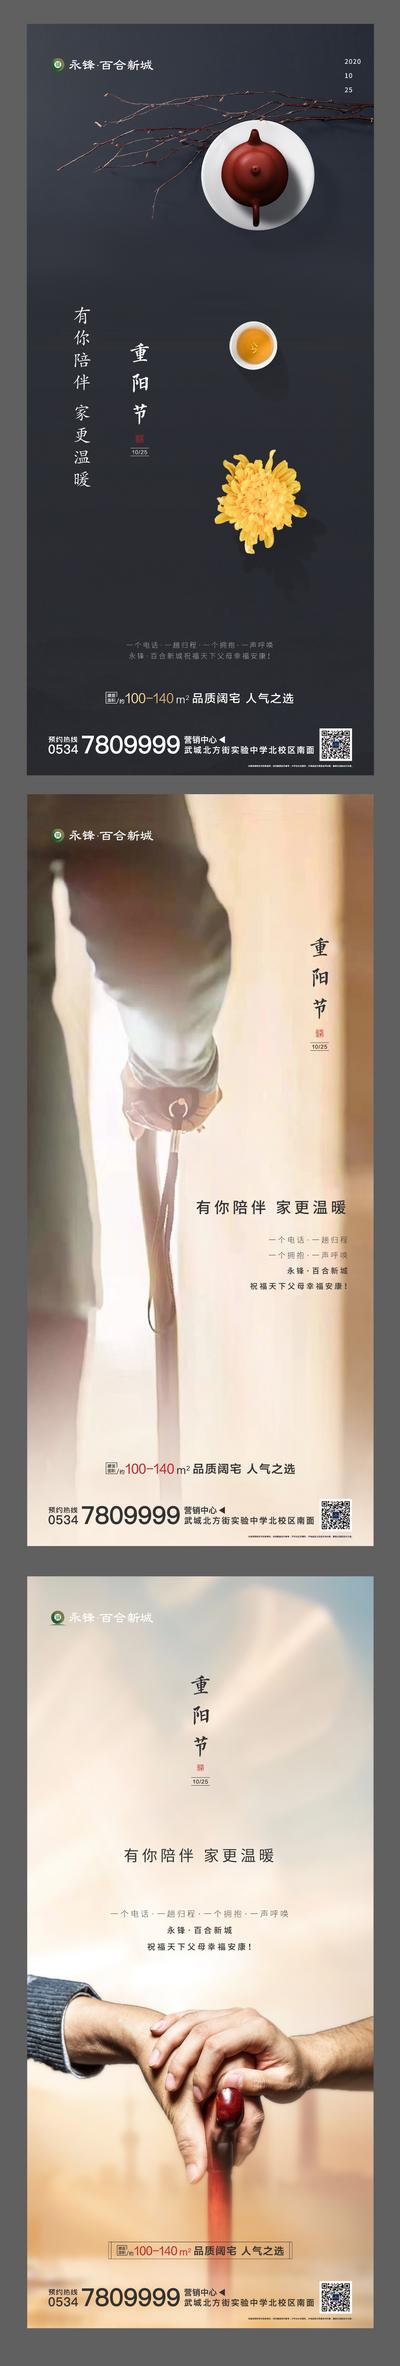 南门网 海报   房地产  系列   重阳节   传统节日   菊花  老人  拐杖